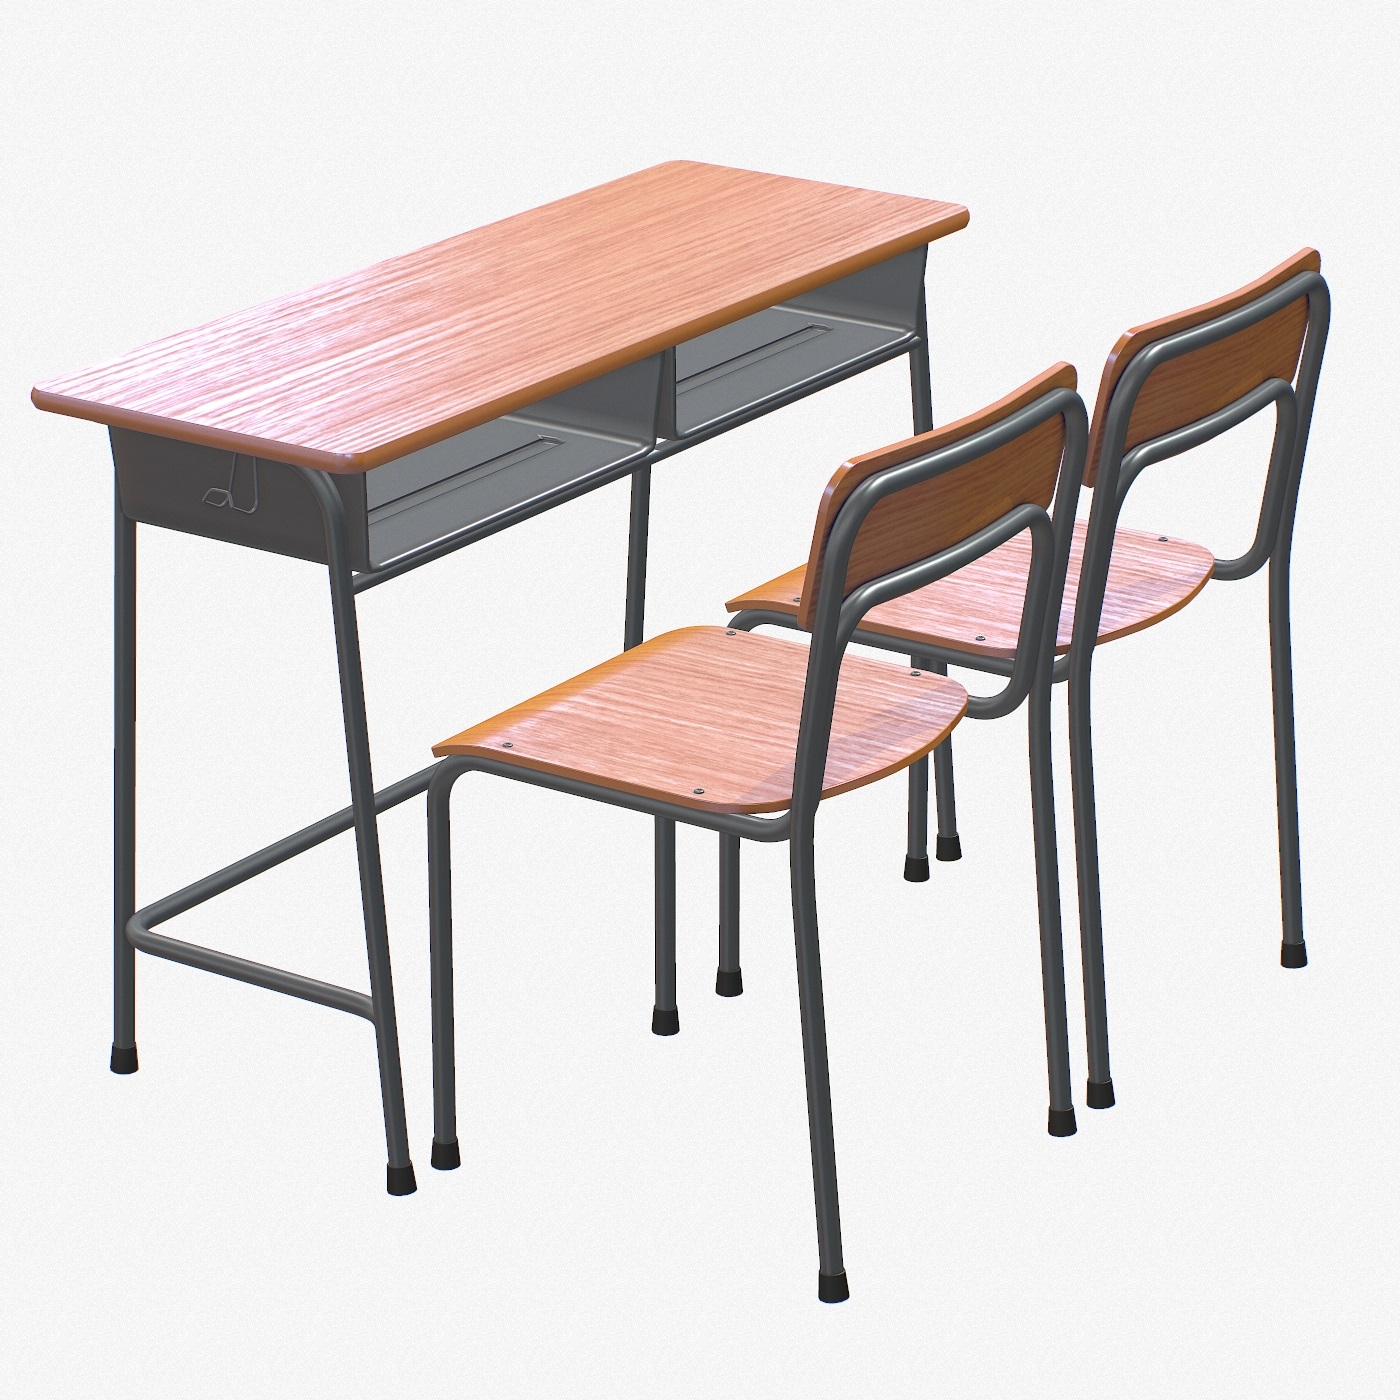 School Desk Chair 2 3d Model Turbosquid 1309123